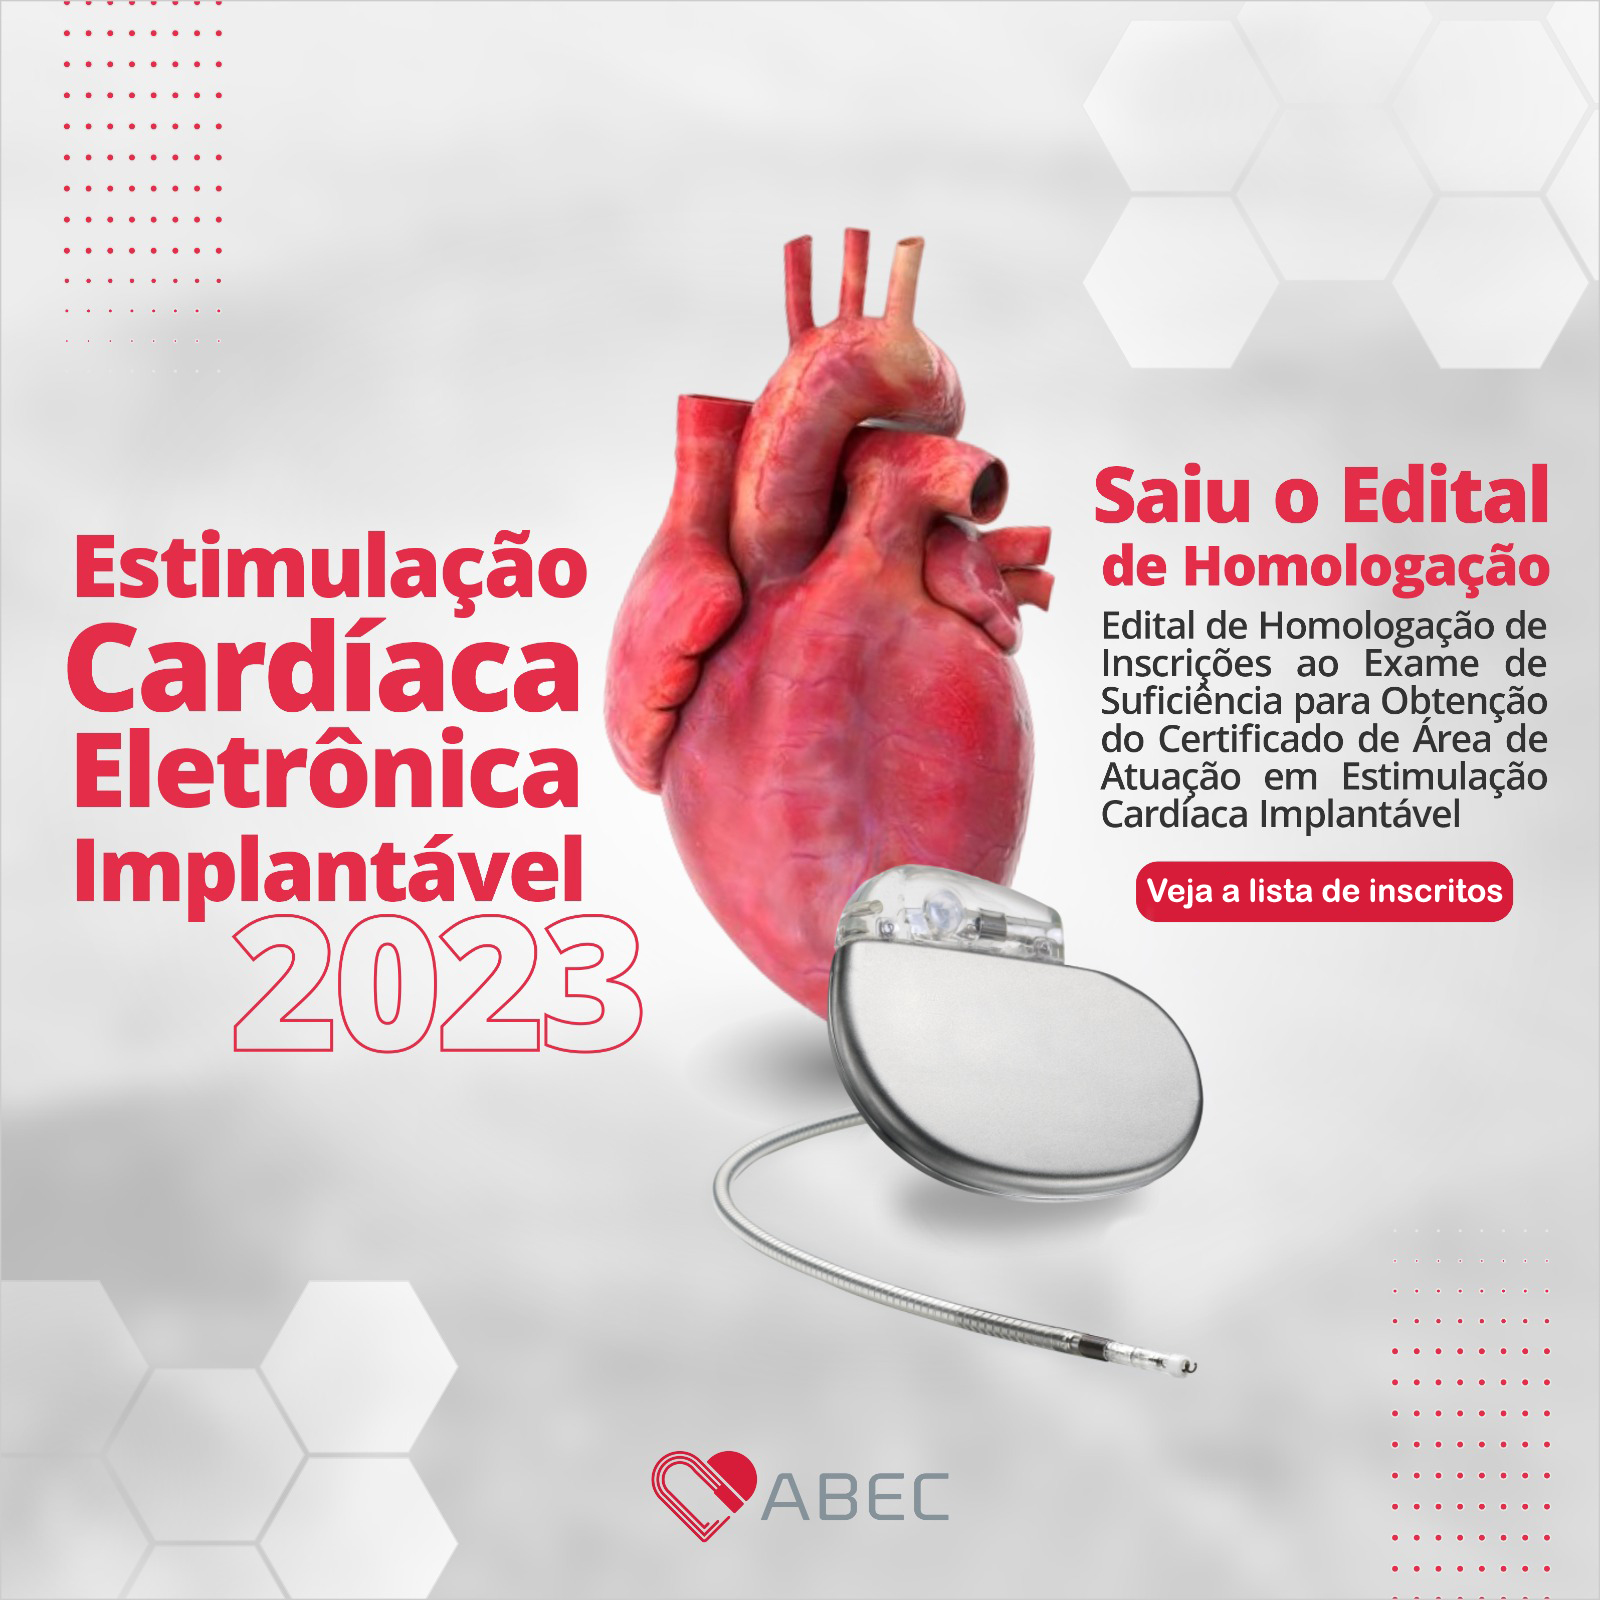 Edital de Homologação de Inscrições ao Exame de Suficiência para Obtenção do Certificado de Área de Atuação em Estimulação Cardíaca Implantavel